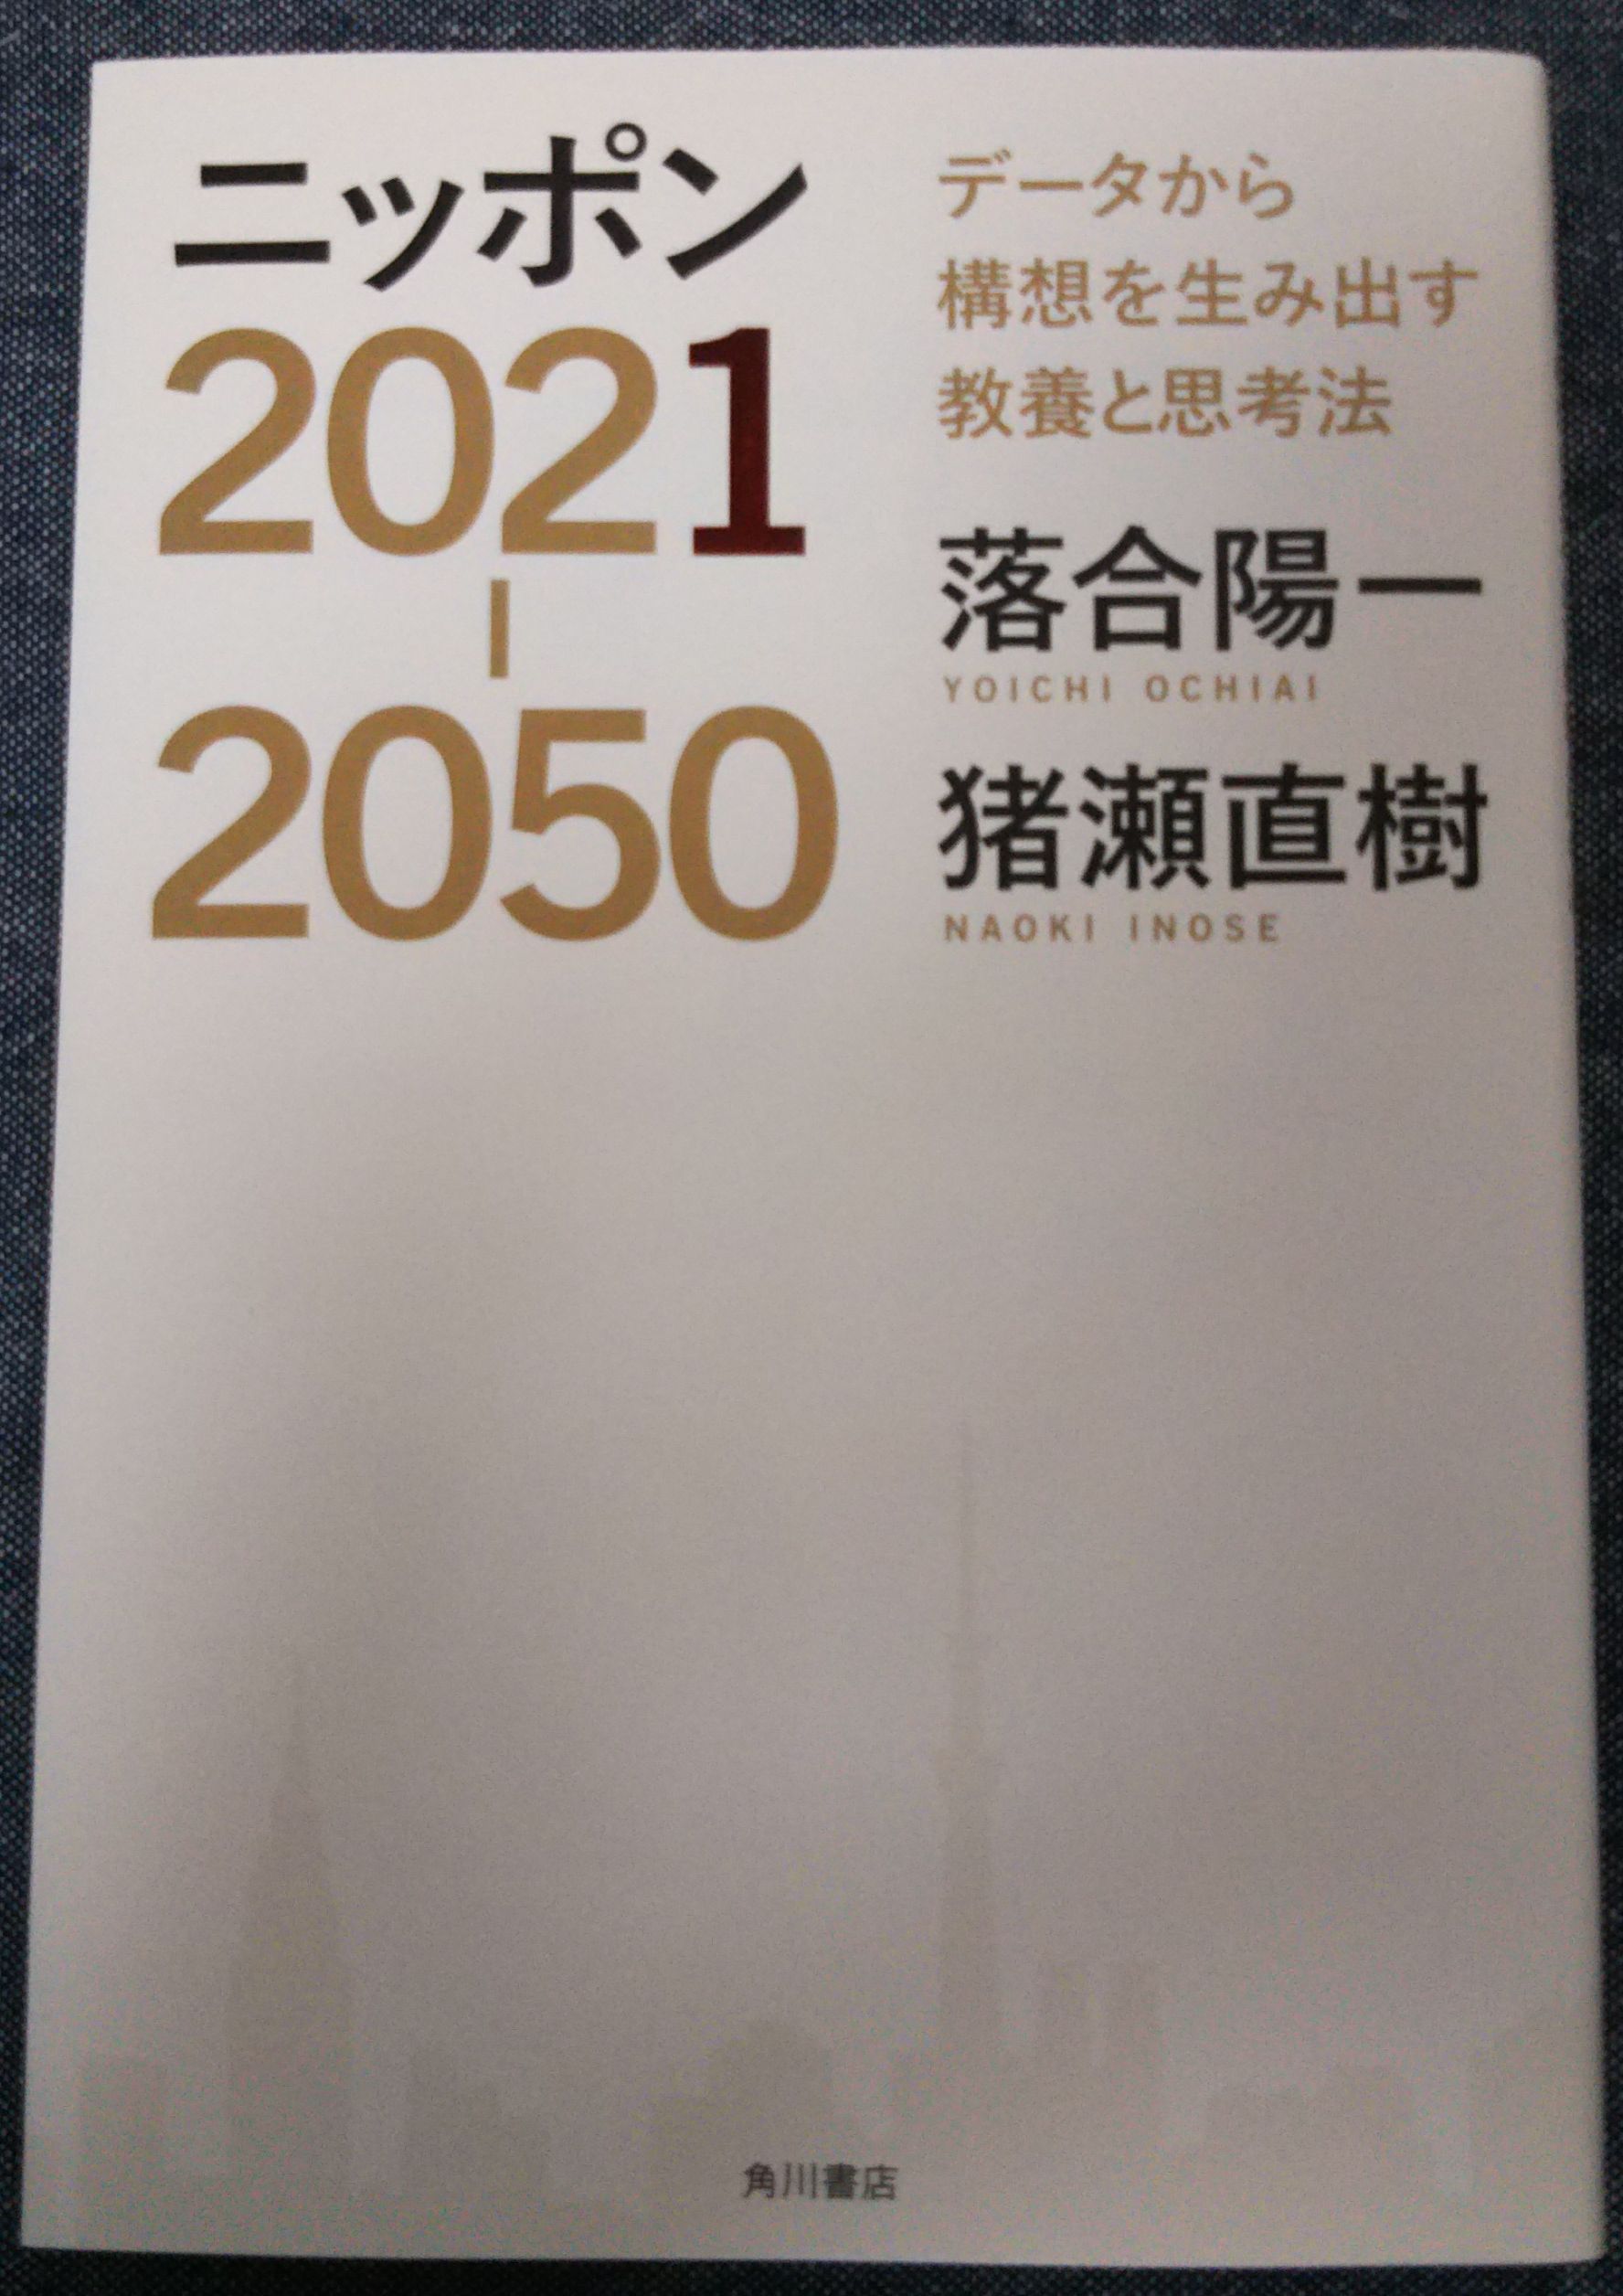 ニッポン2021-2050